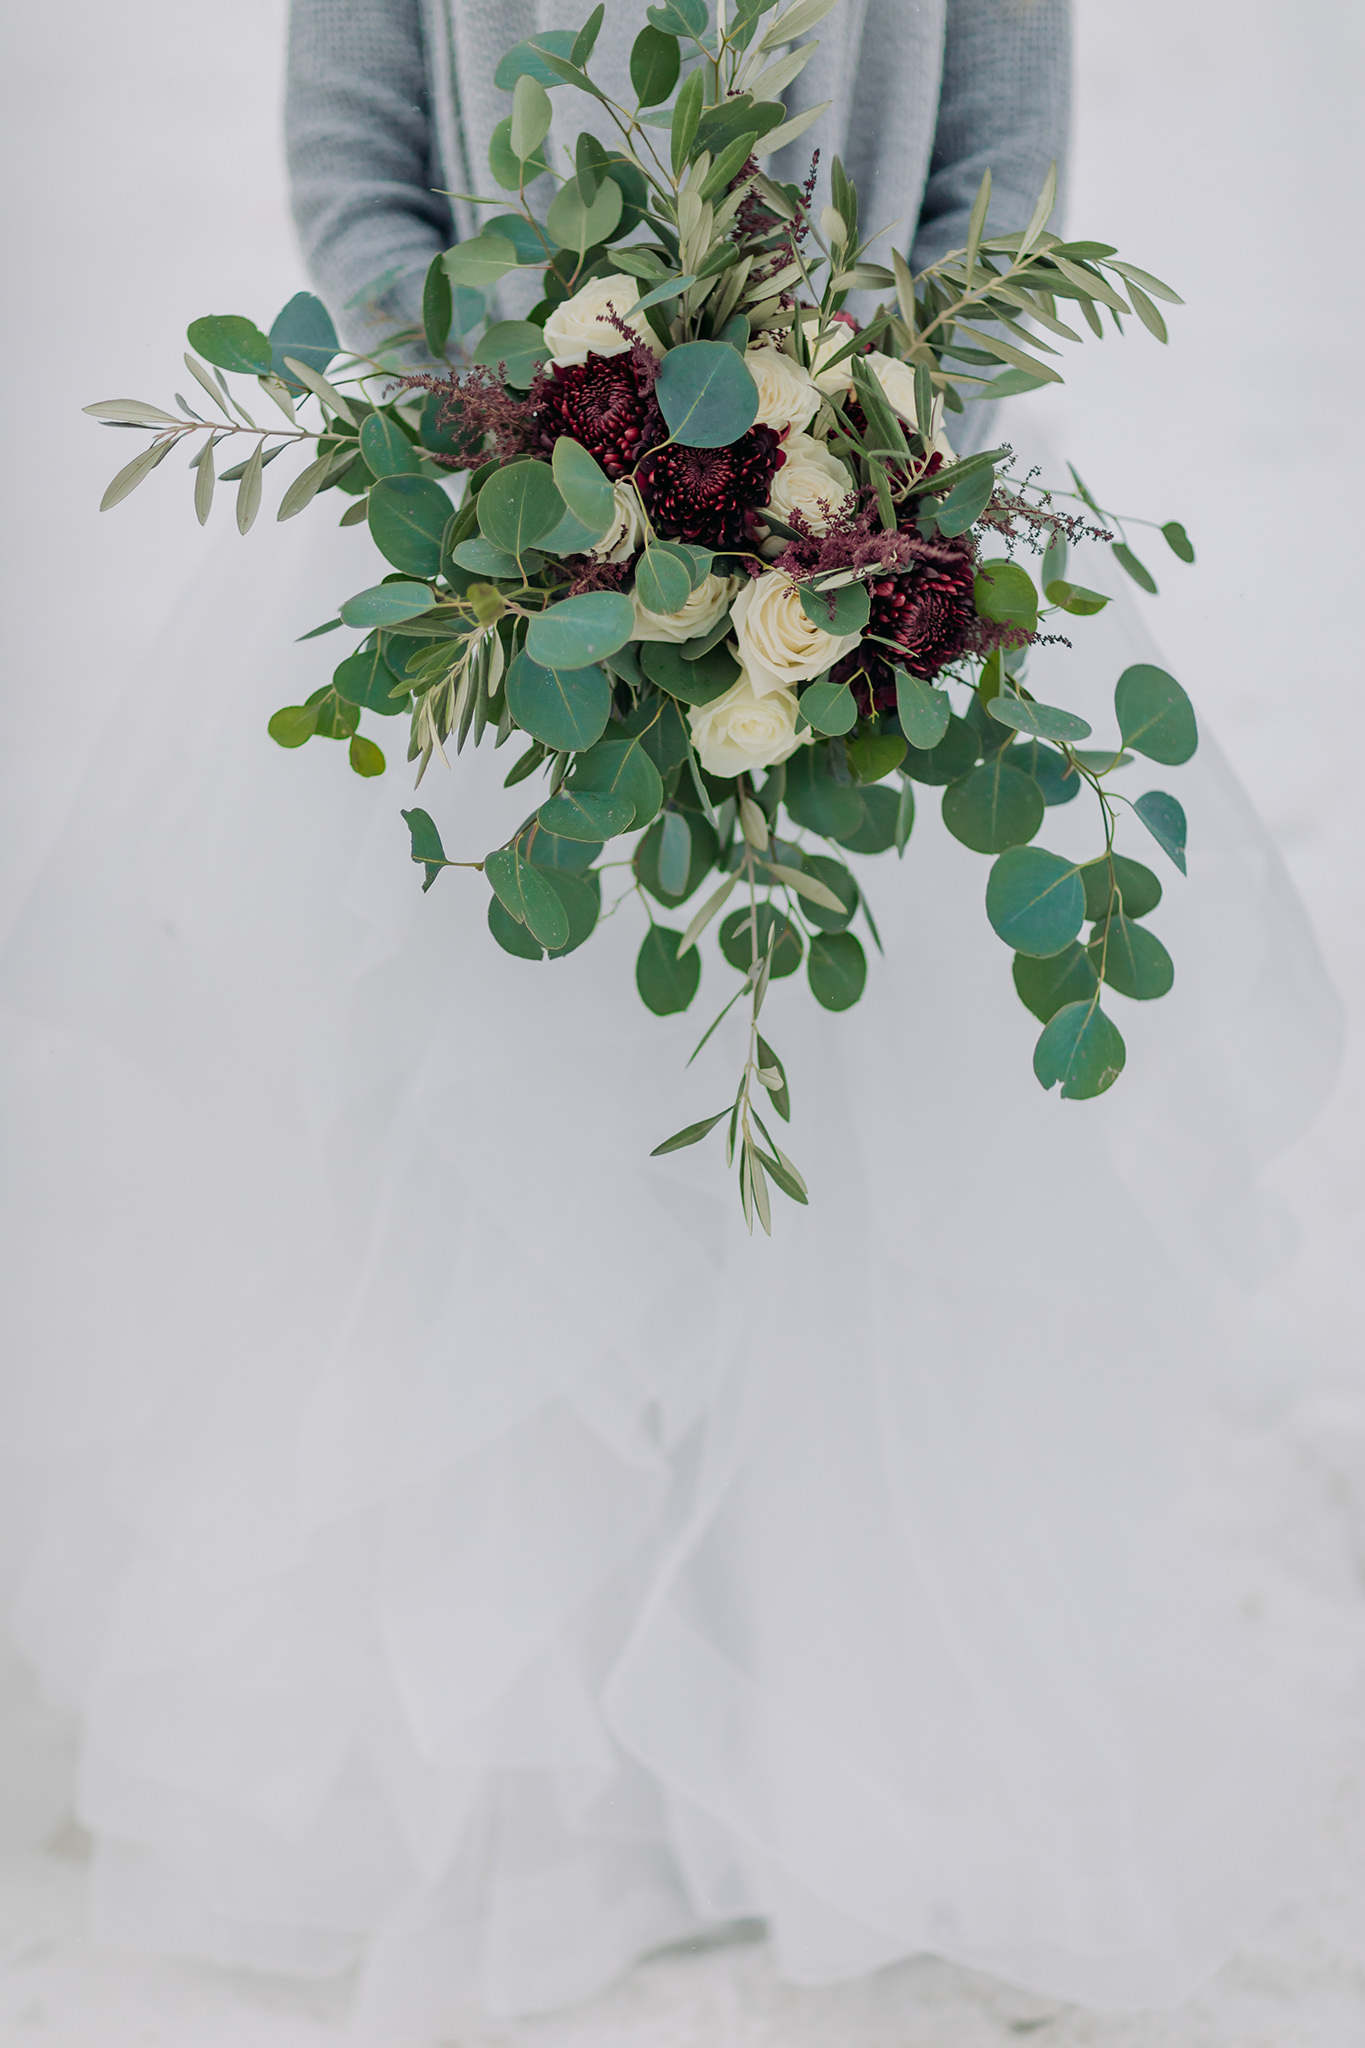 Winter wedding bouquet in burgundy, ivory & green.